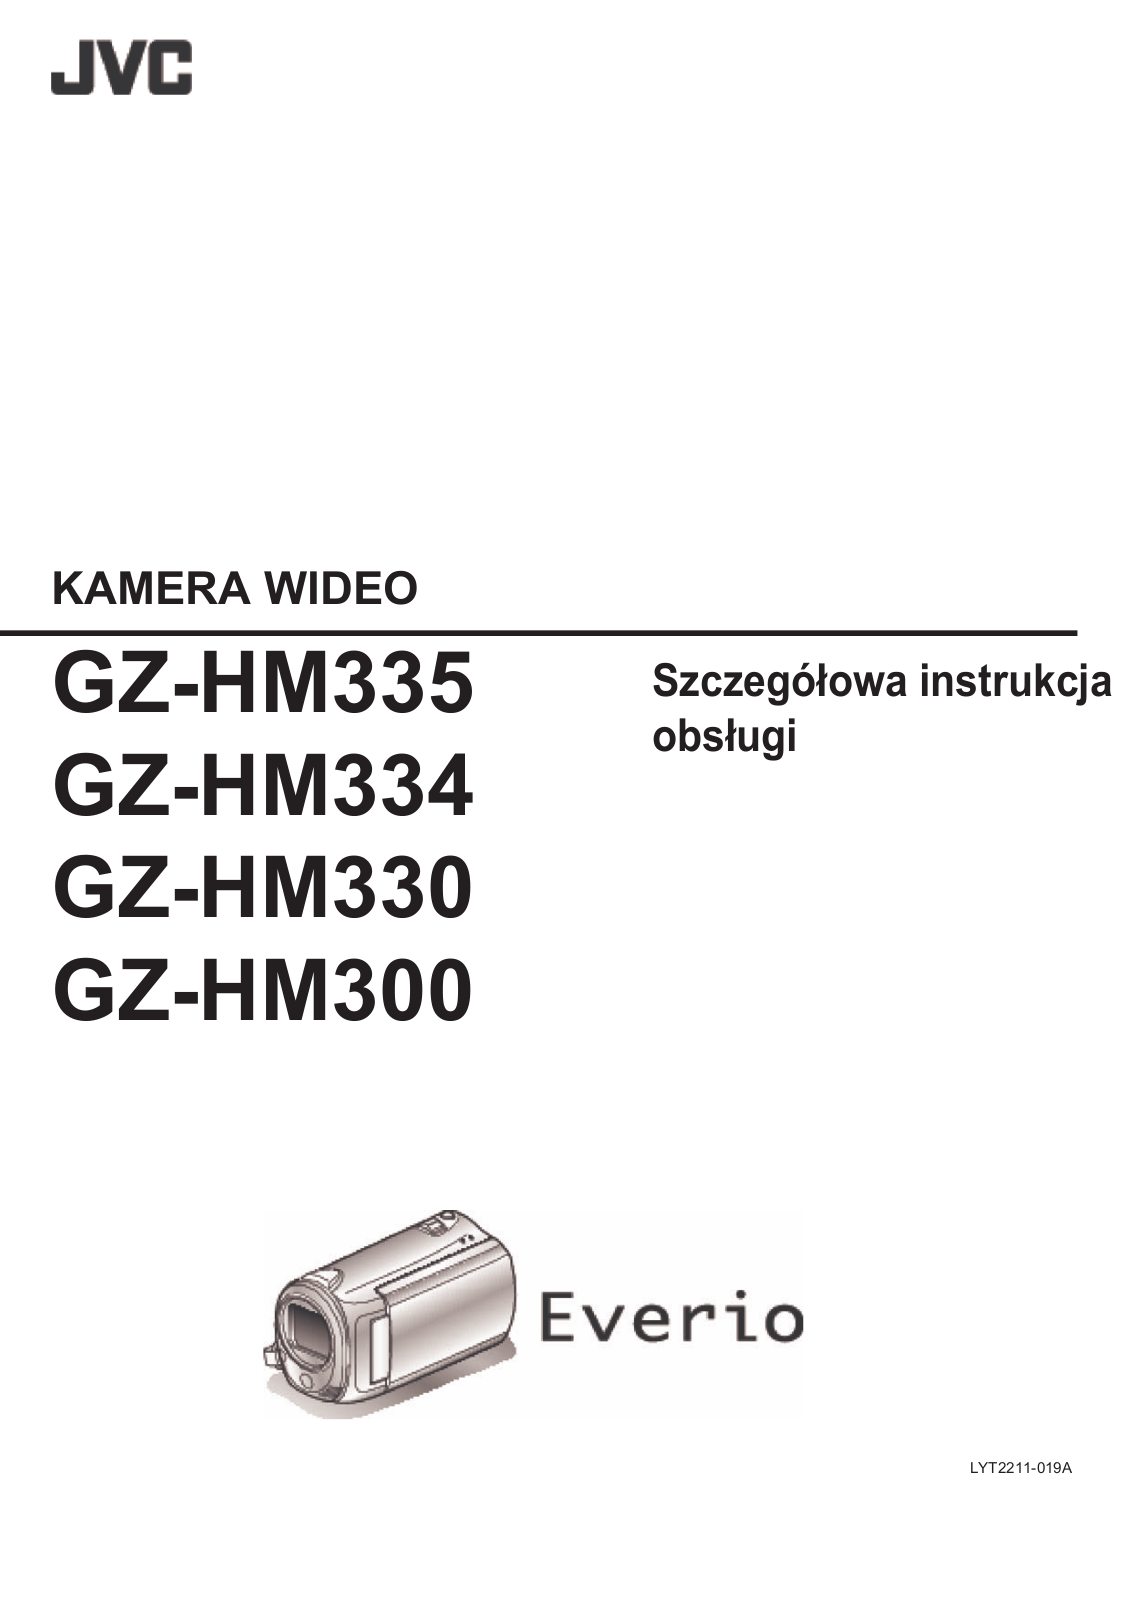 Jvc GC-HM300, GC-HM330, GC-HM334, GC-HM335 Manual